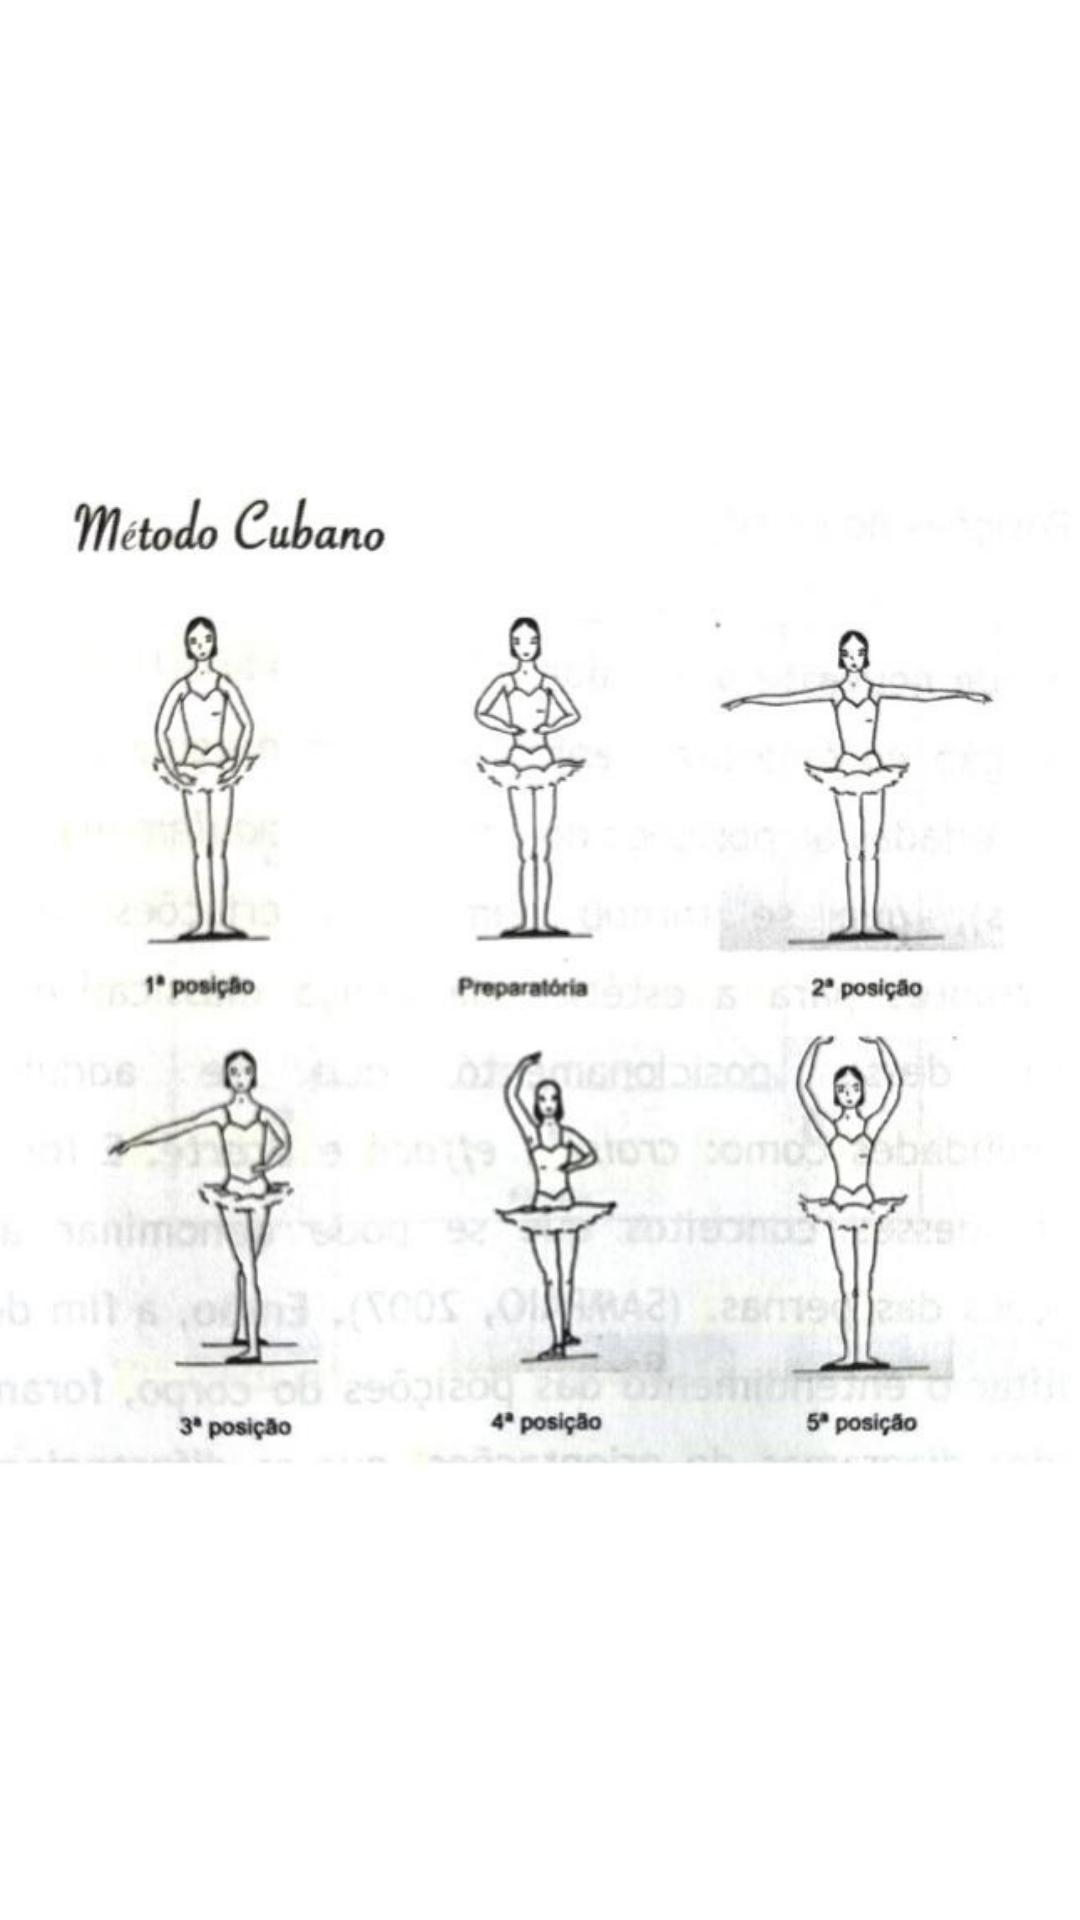 Tutu da Ju  As posições dos braços nos métodos de ballet clássico